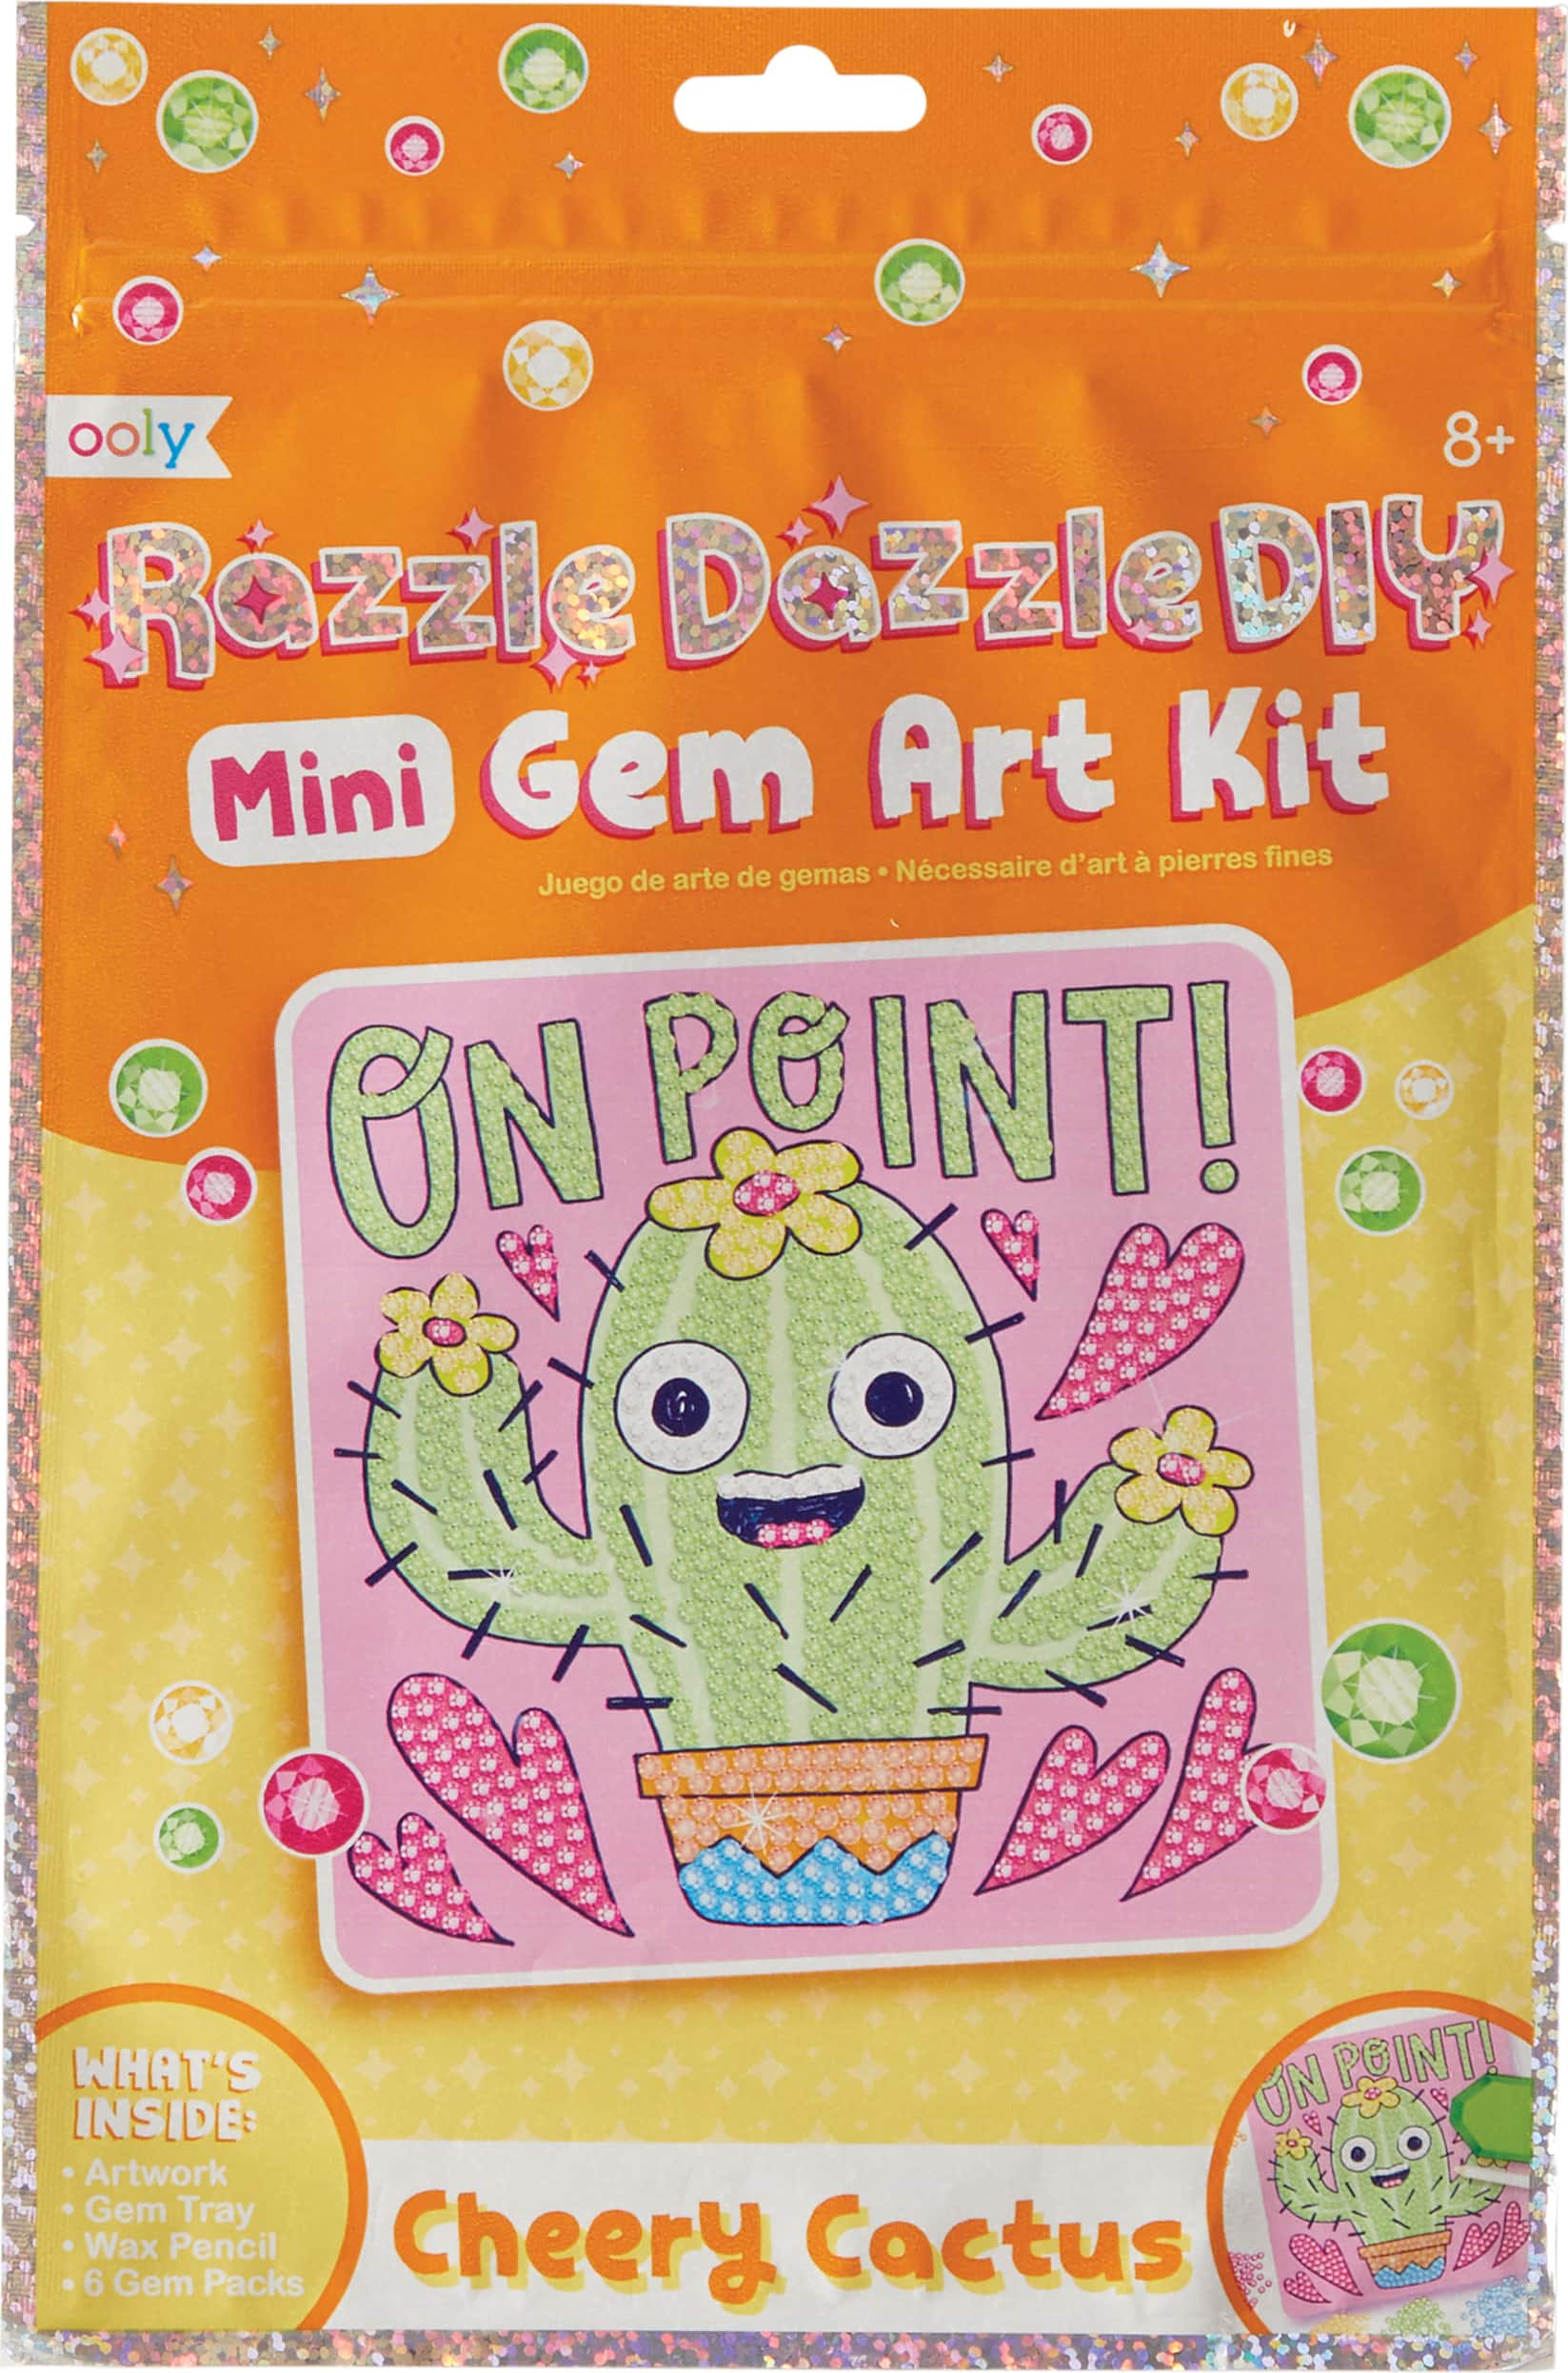 razzle dazzle diy gem art kit - cheery cactus - Tools 4 Teaching